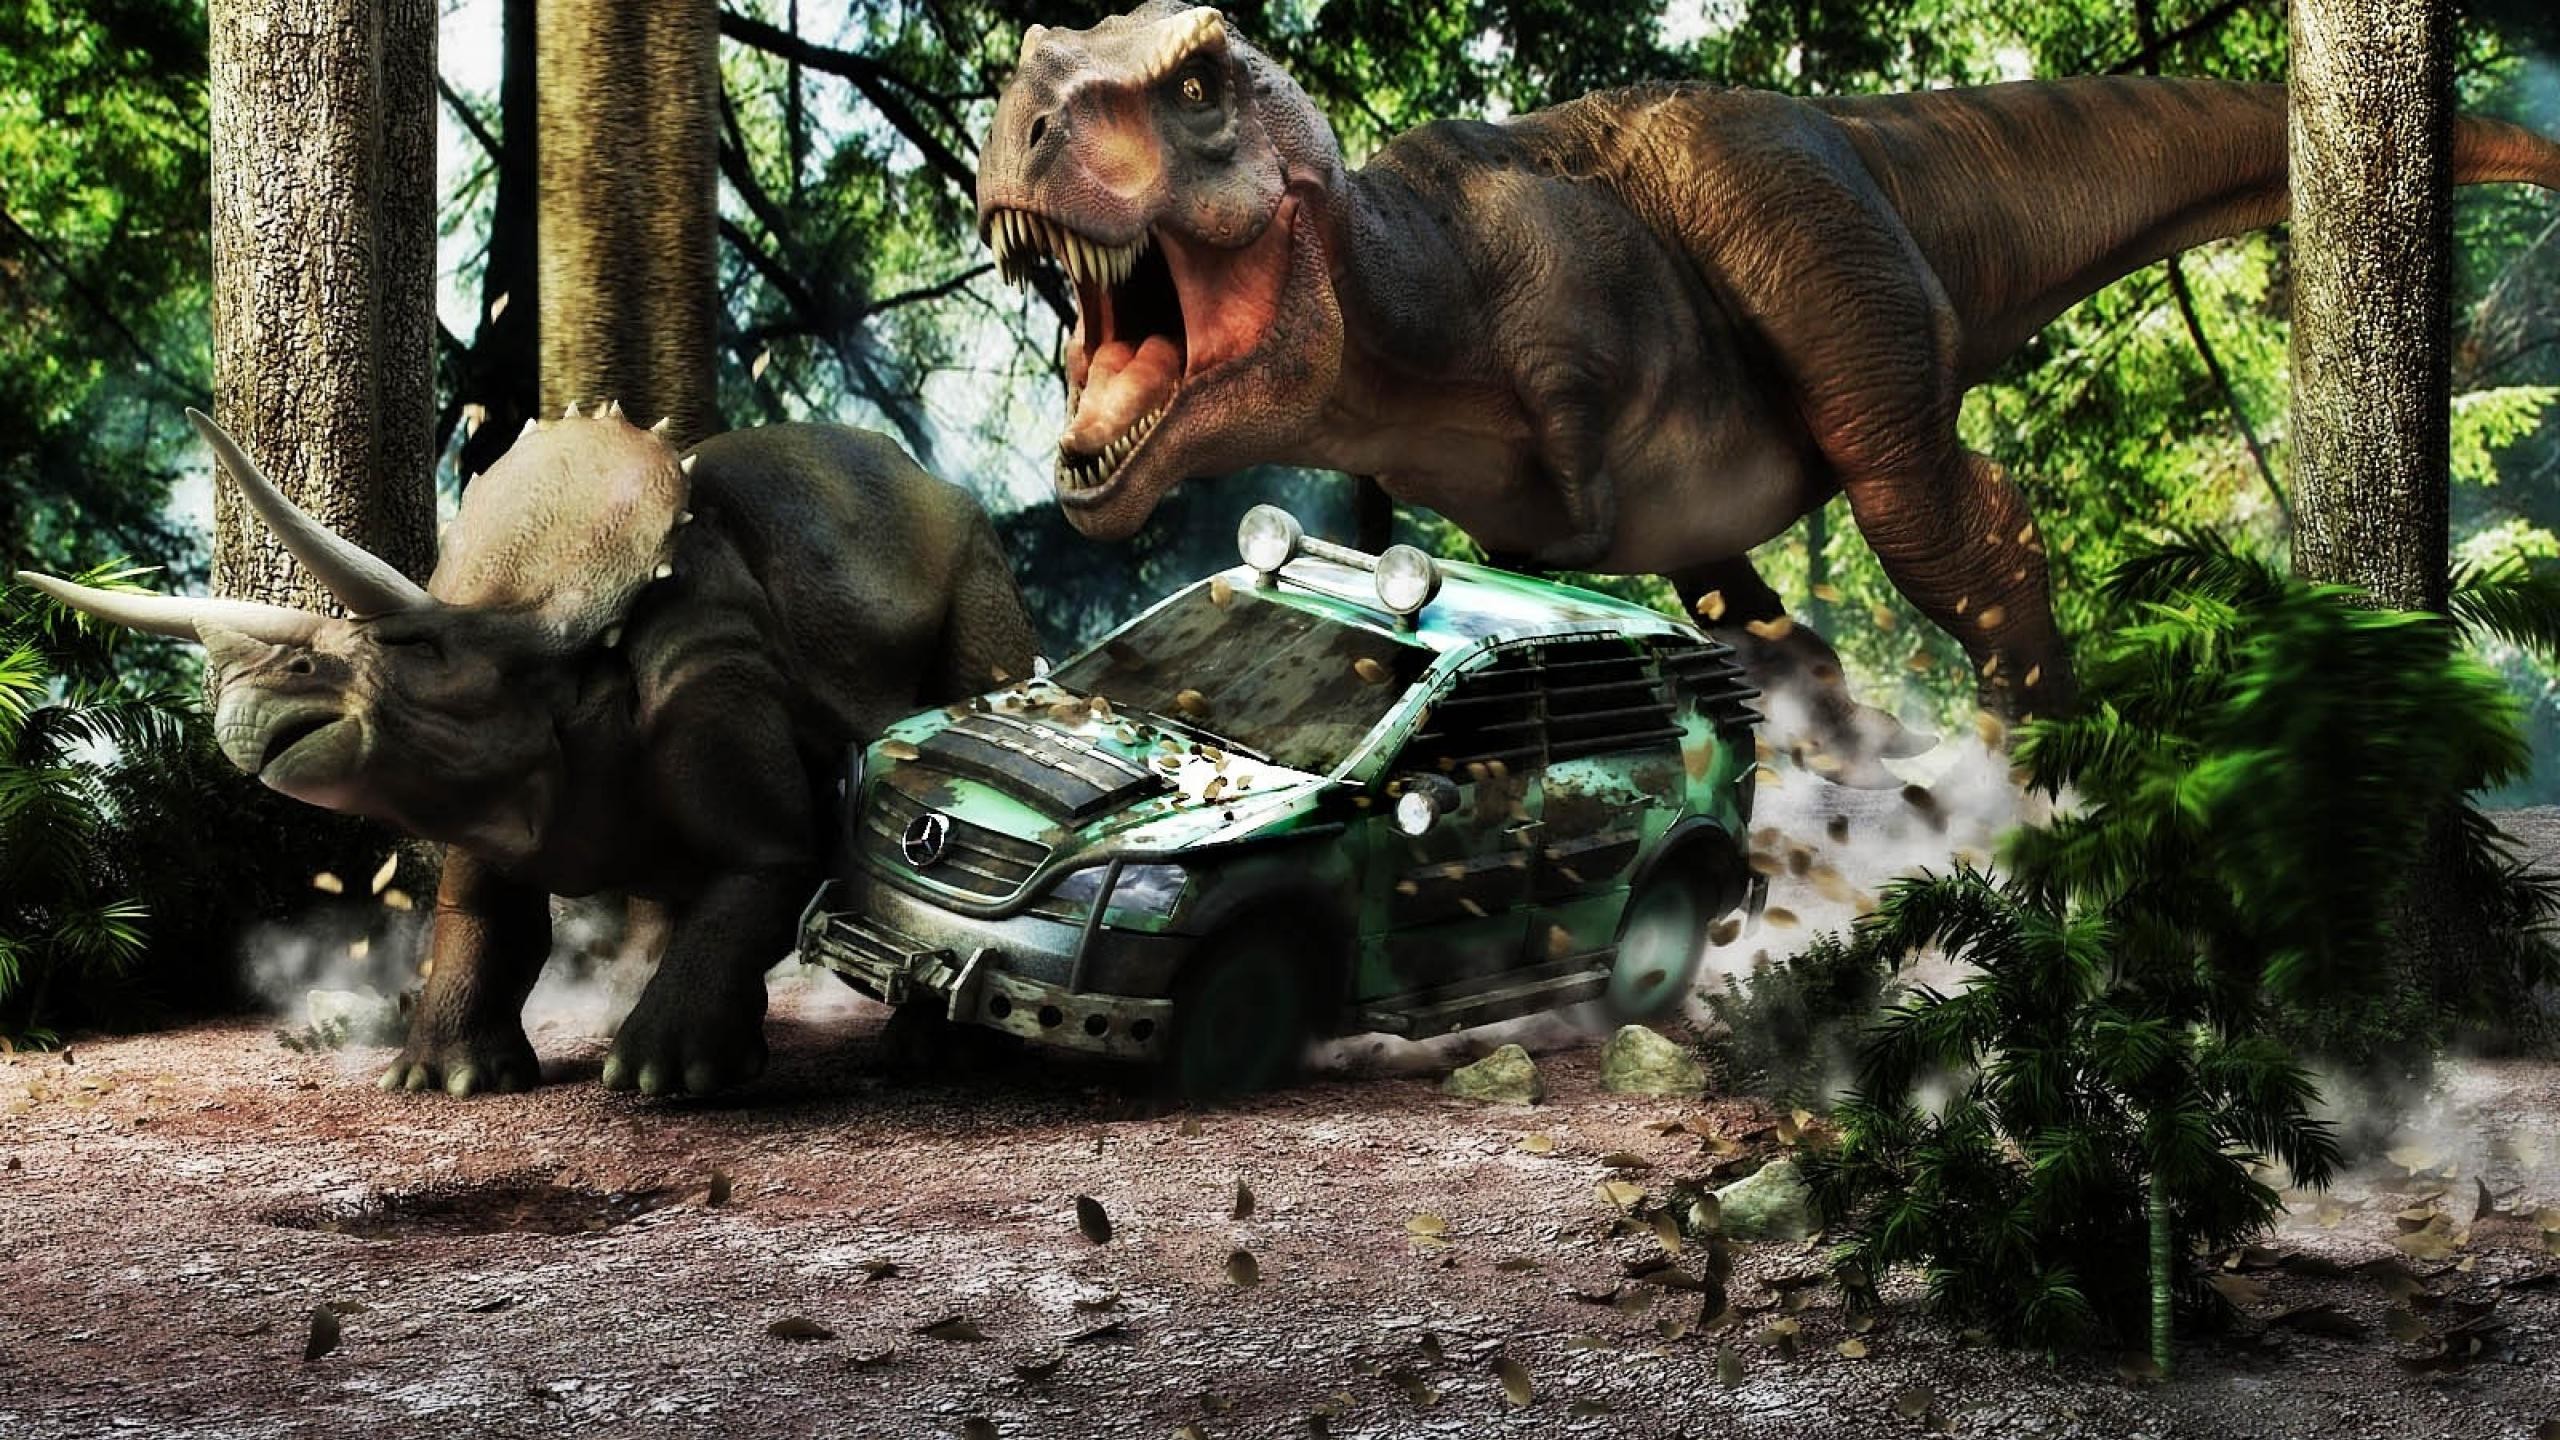 2560x1440 Jurassic Park T-rex Wallpaper Full Hd